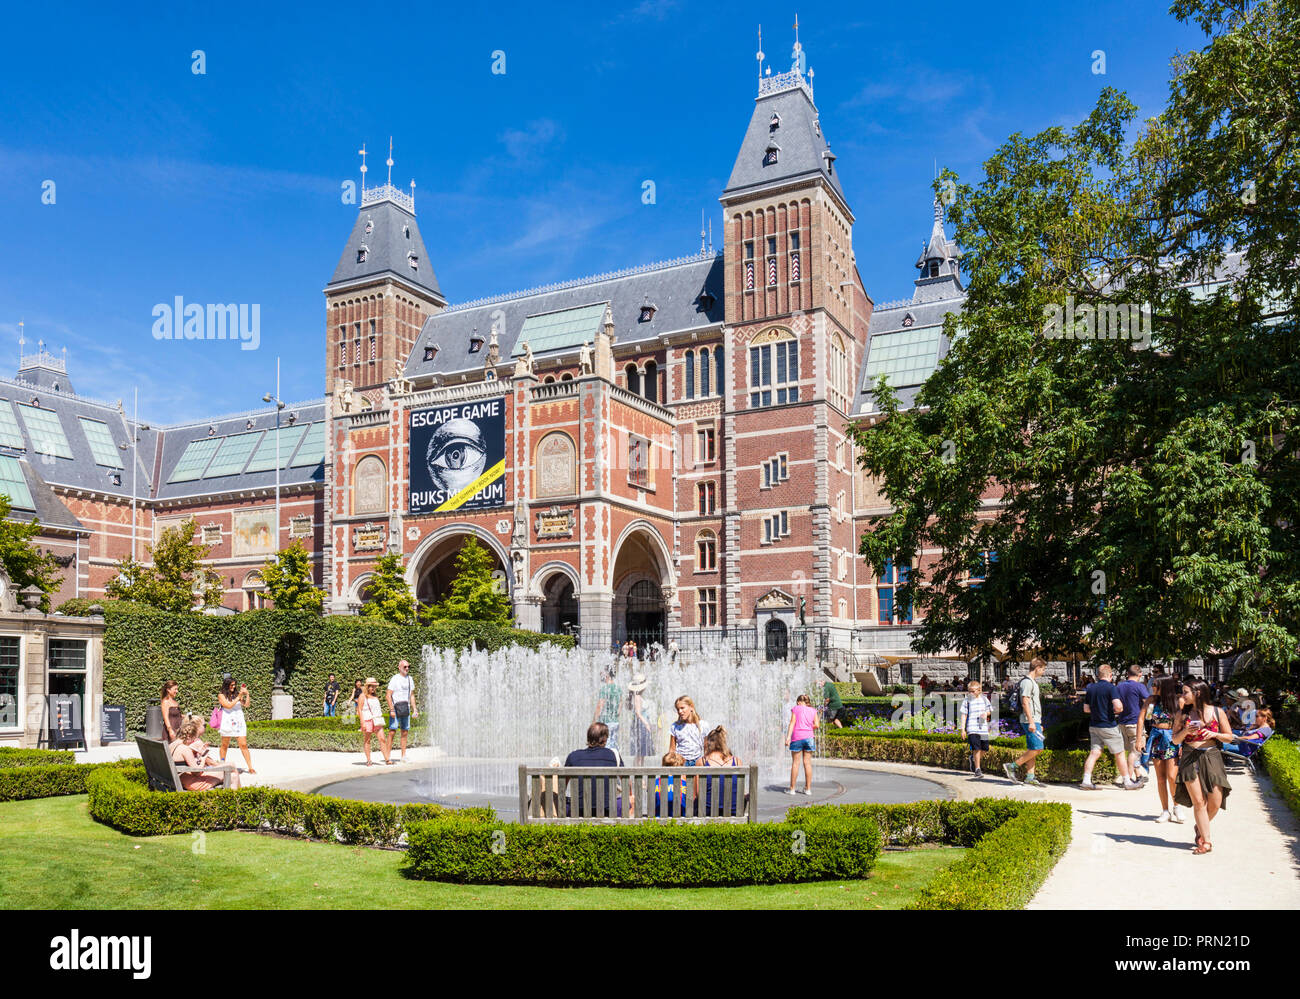 Amsterdam Rijksmuseum Amsterdam des 19. Jahrhunderts Gebäude, in dem der niederländische Malerei Meisterwerke und eine große europäische Kunstsammlung Holland Niederlande Stockfoto